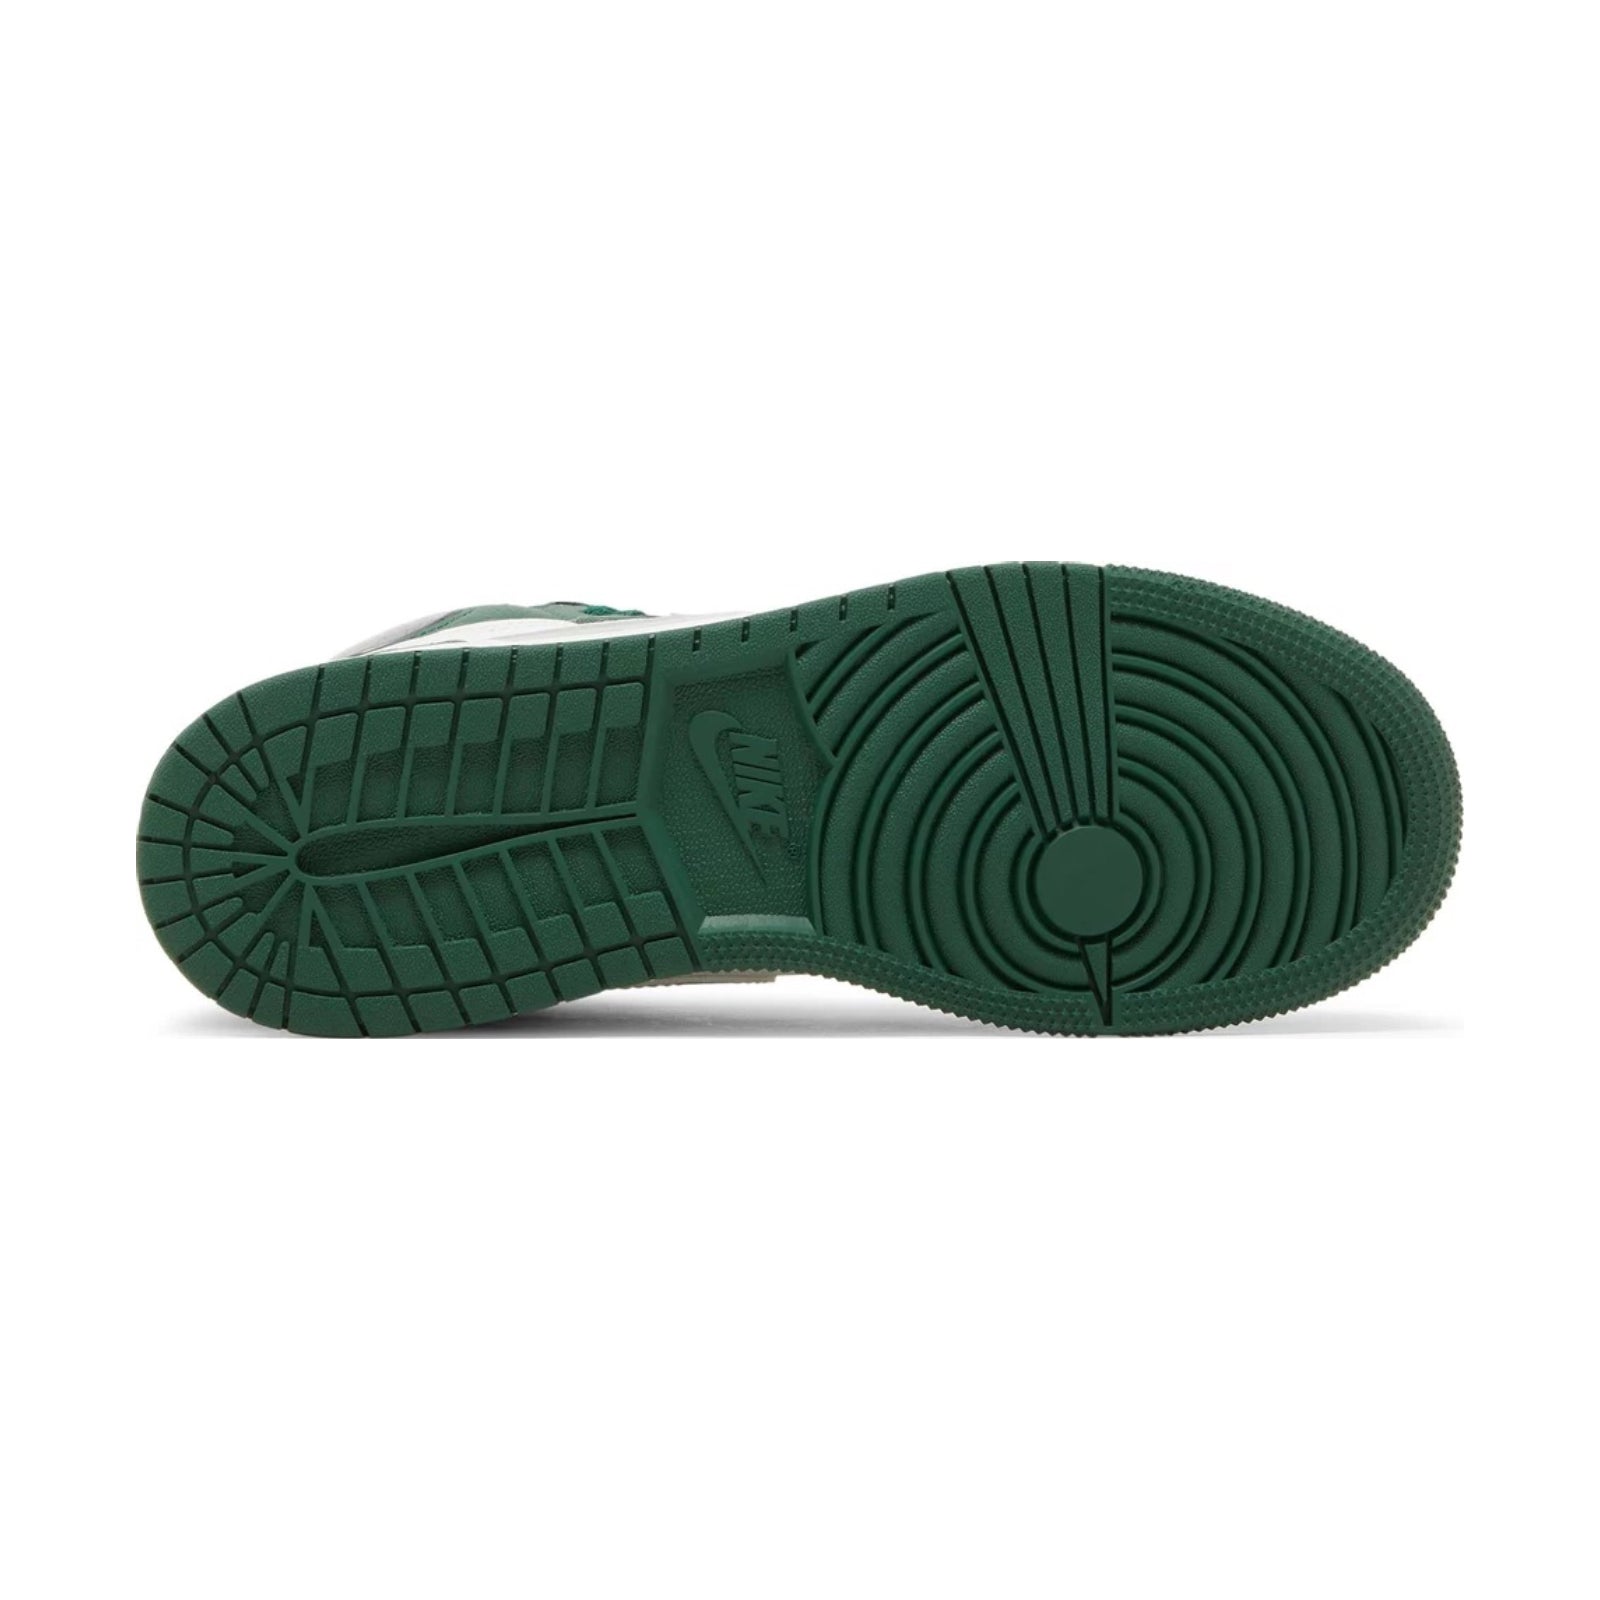 Air Sneakers Jordan inked 11 Retro Low Bright Citrus Bianco (GS), Gorge Green